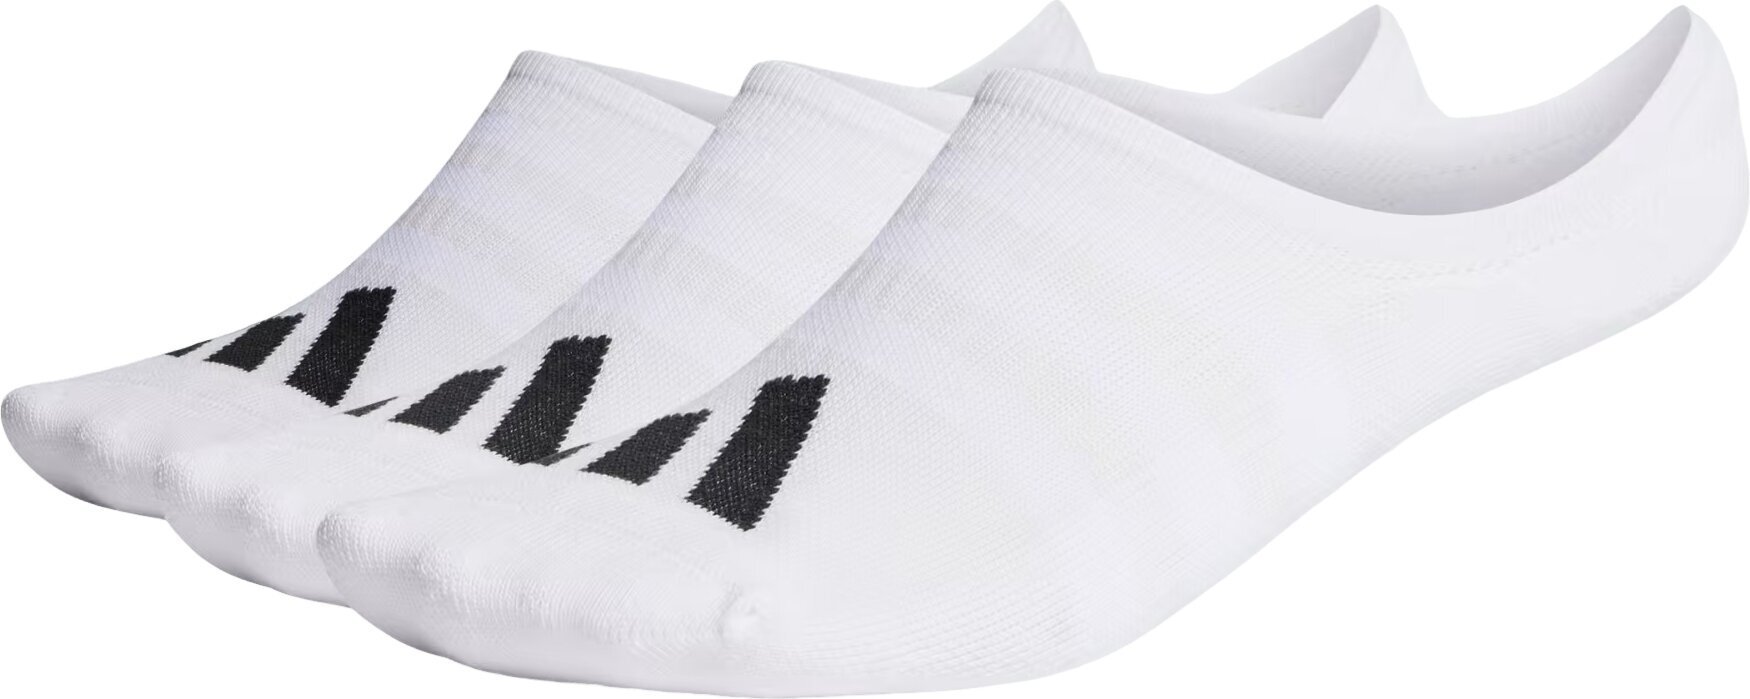 Ponožky Adidas No Show Golf Socks 3-Pairs Ponožky White 43-47